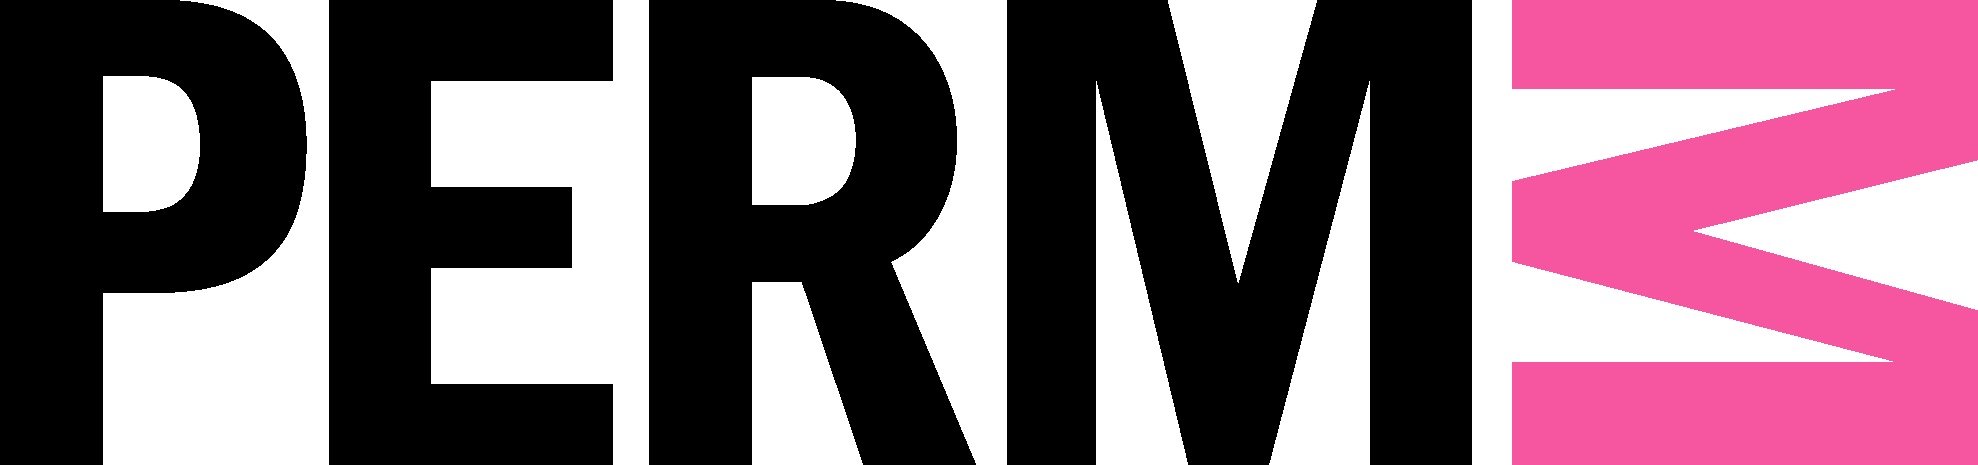 Лова пермь. Пермь музей современного искусства логотип. PERMM музей современного искусства Пермь. Пермский музей современного искусства PERMM эмблема. PERMM логотип.